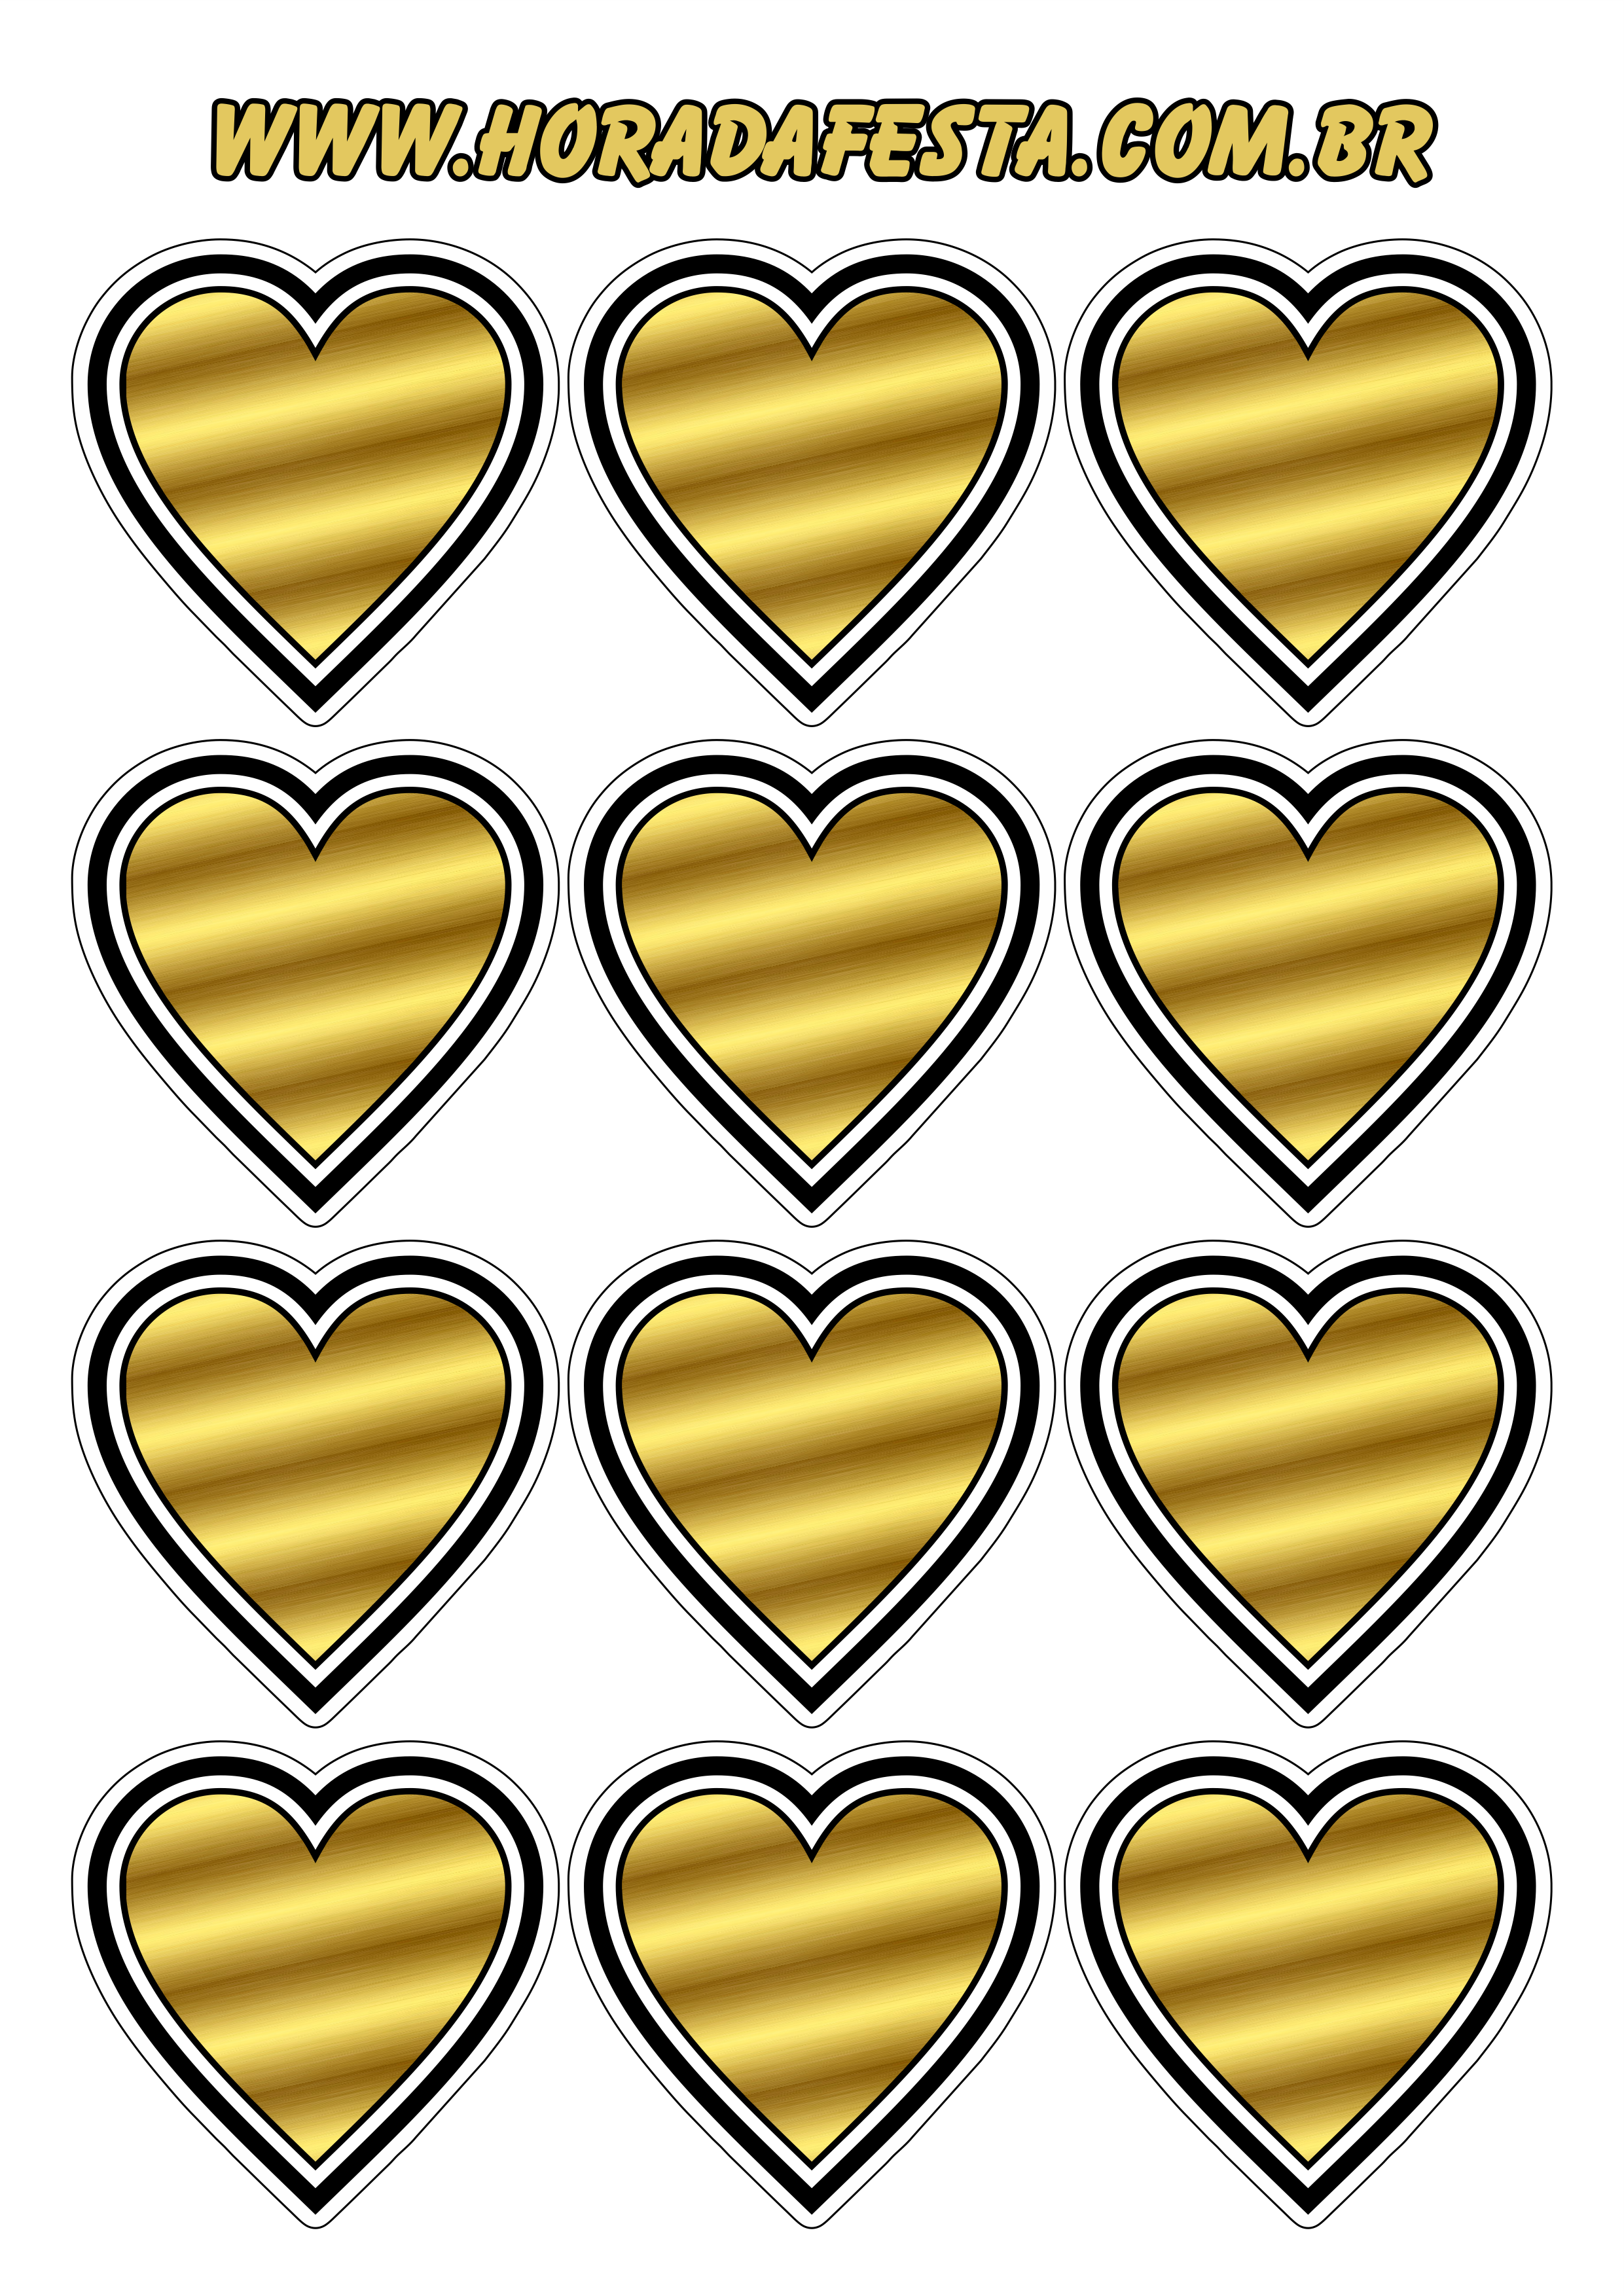 Coração dourado com contorno adesivo tag sticker decoração de festas temáticas 12 imagens png